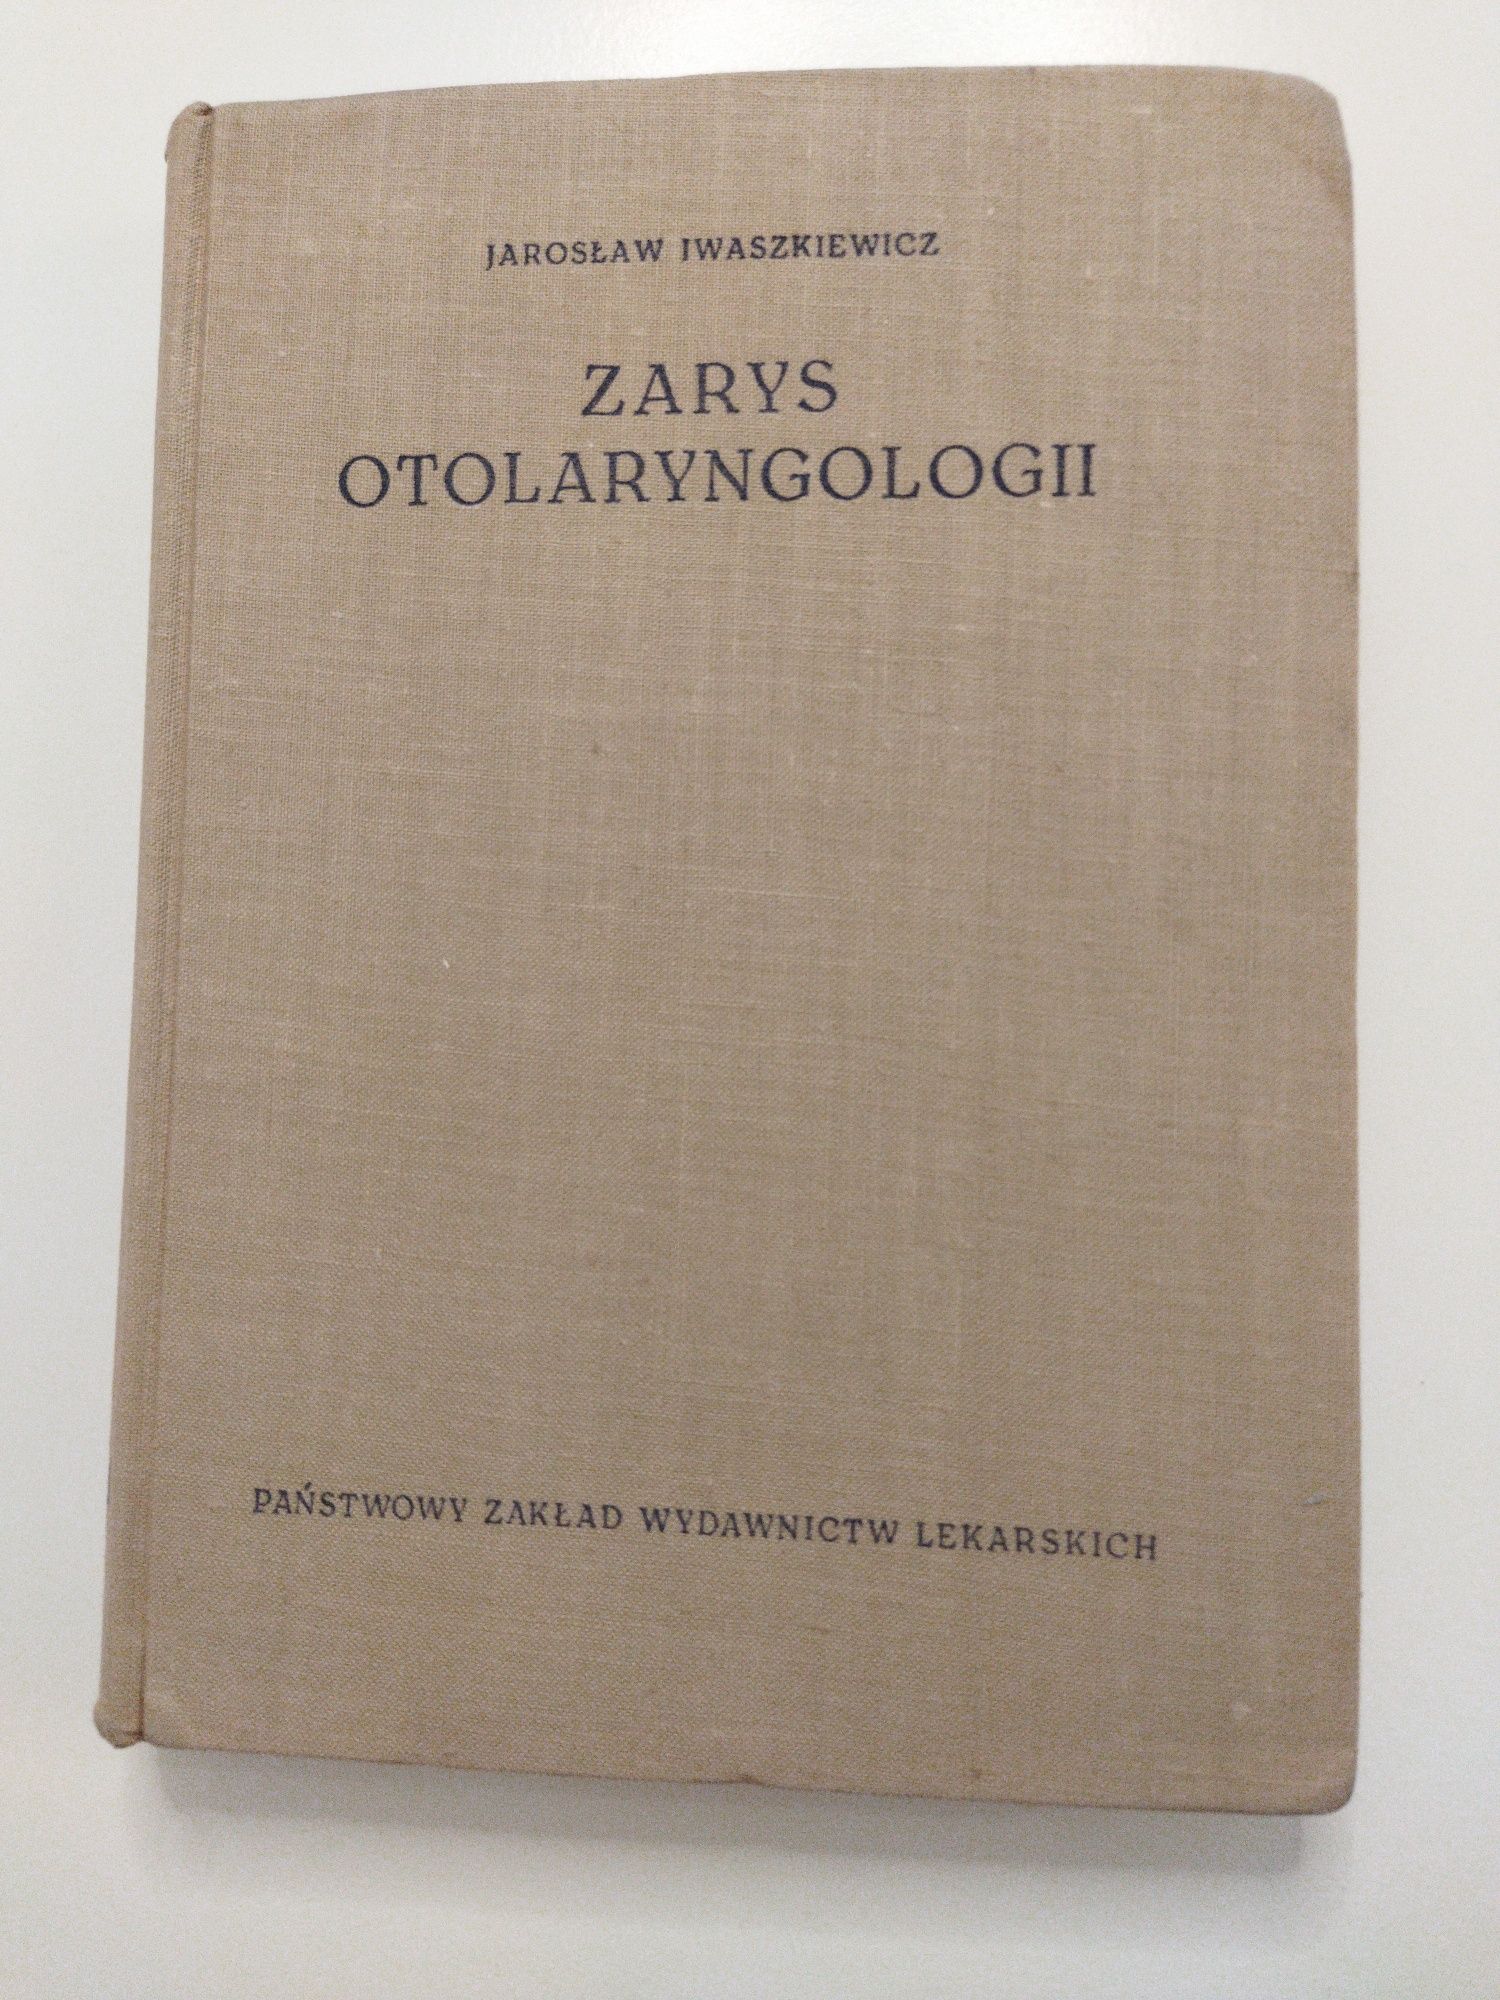 Zarys otolaryngologii Jarosław Iwaszkiewicz